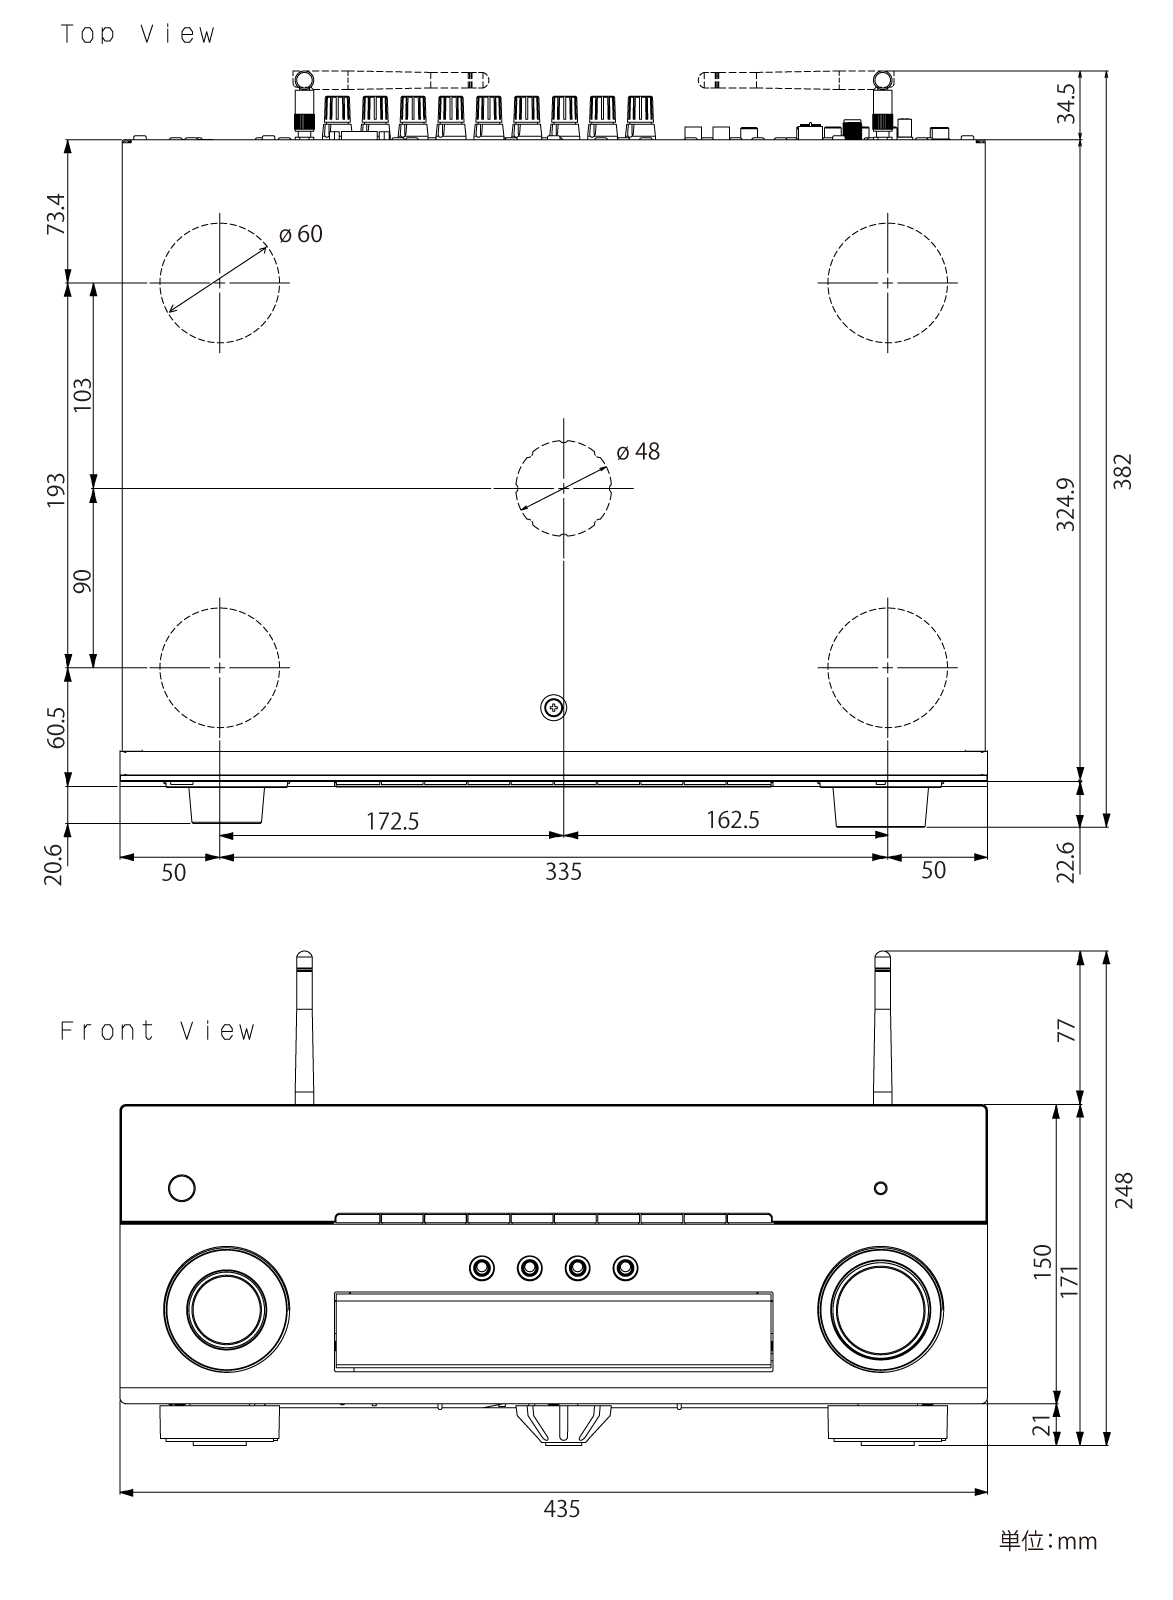 ヤマハ | RX-A880 - AVアンプ - 本体寸法図